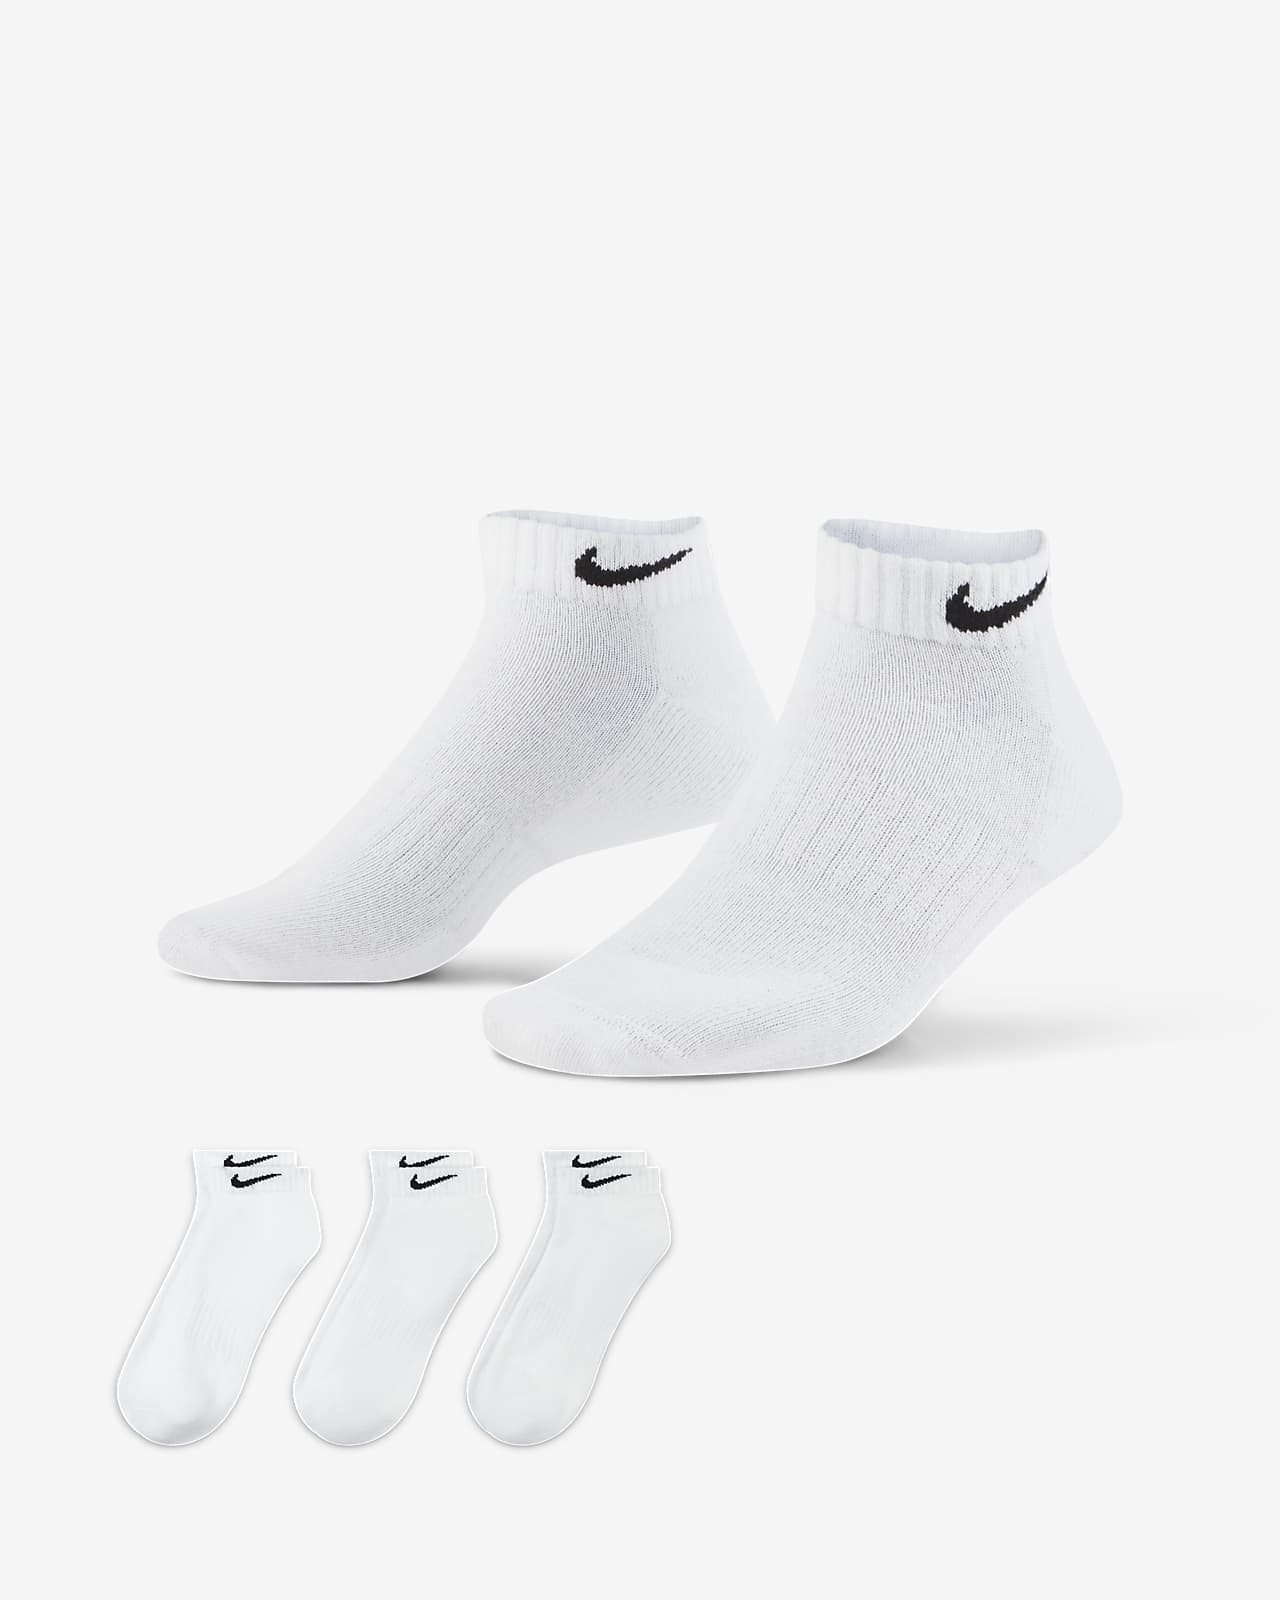 ถุงเท้าเทรนนิ่งไม่หุ้มข้อ Nike Everyday Cushioned (3 คู่)